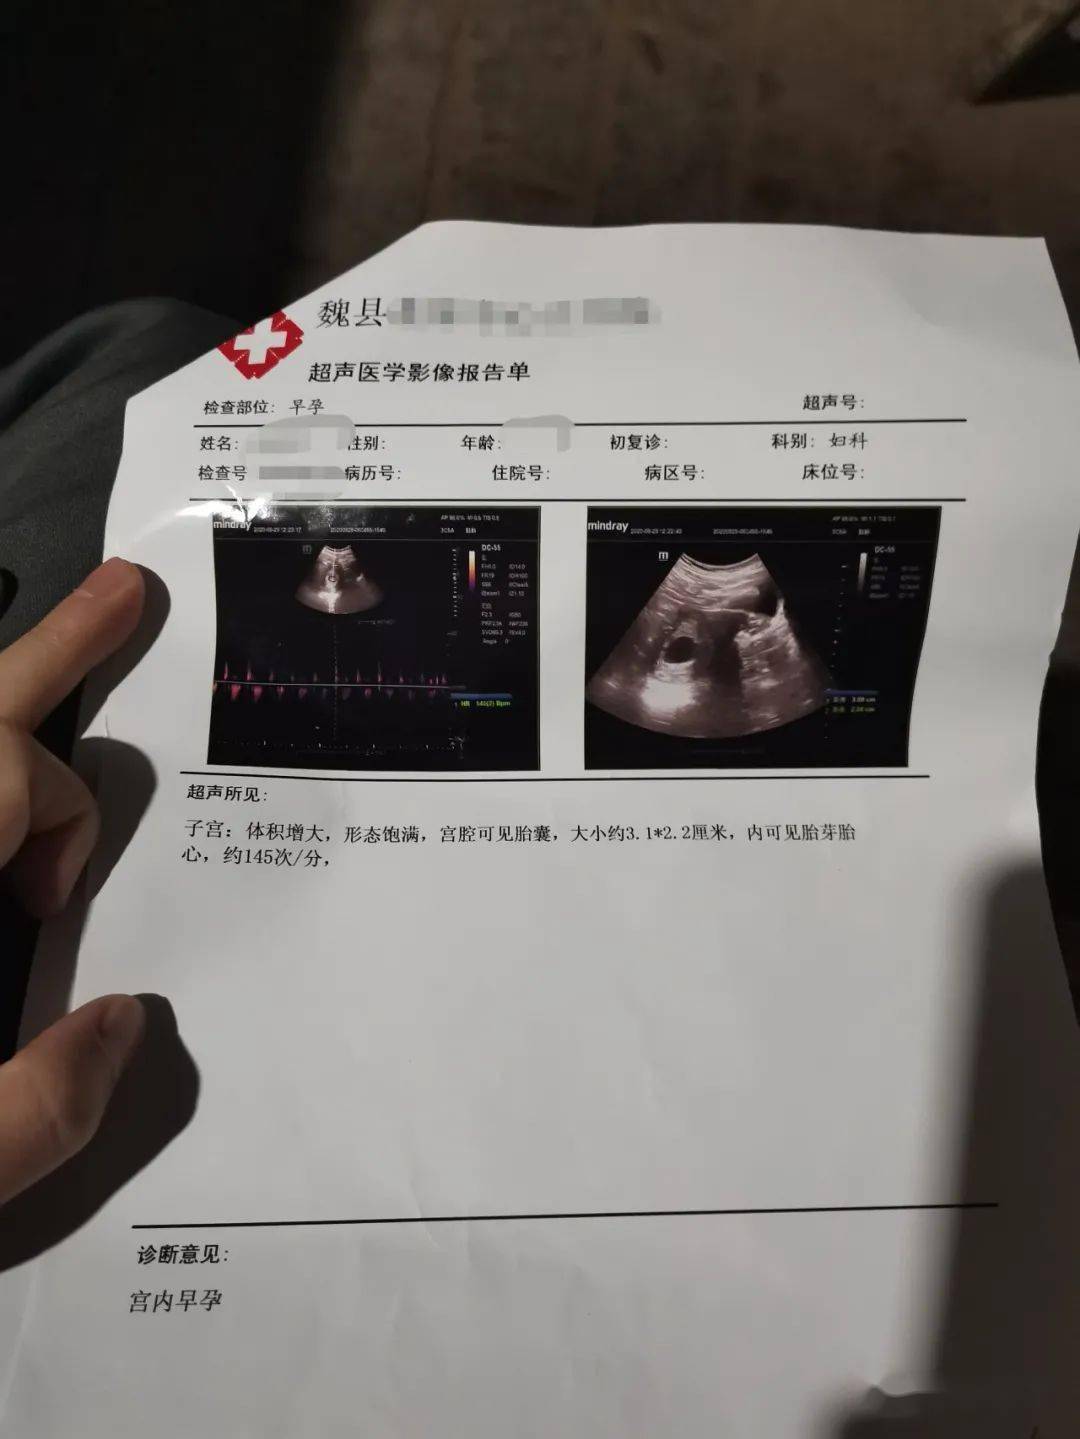 怀孕检查照片证明图片